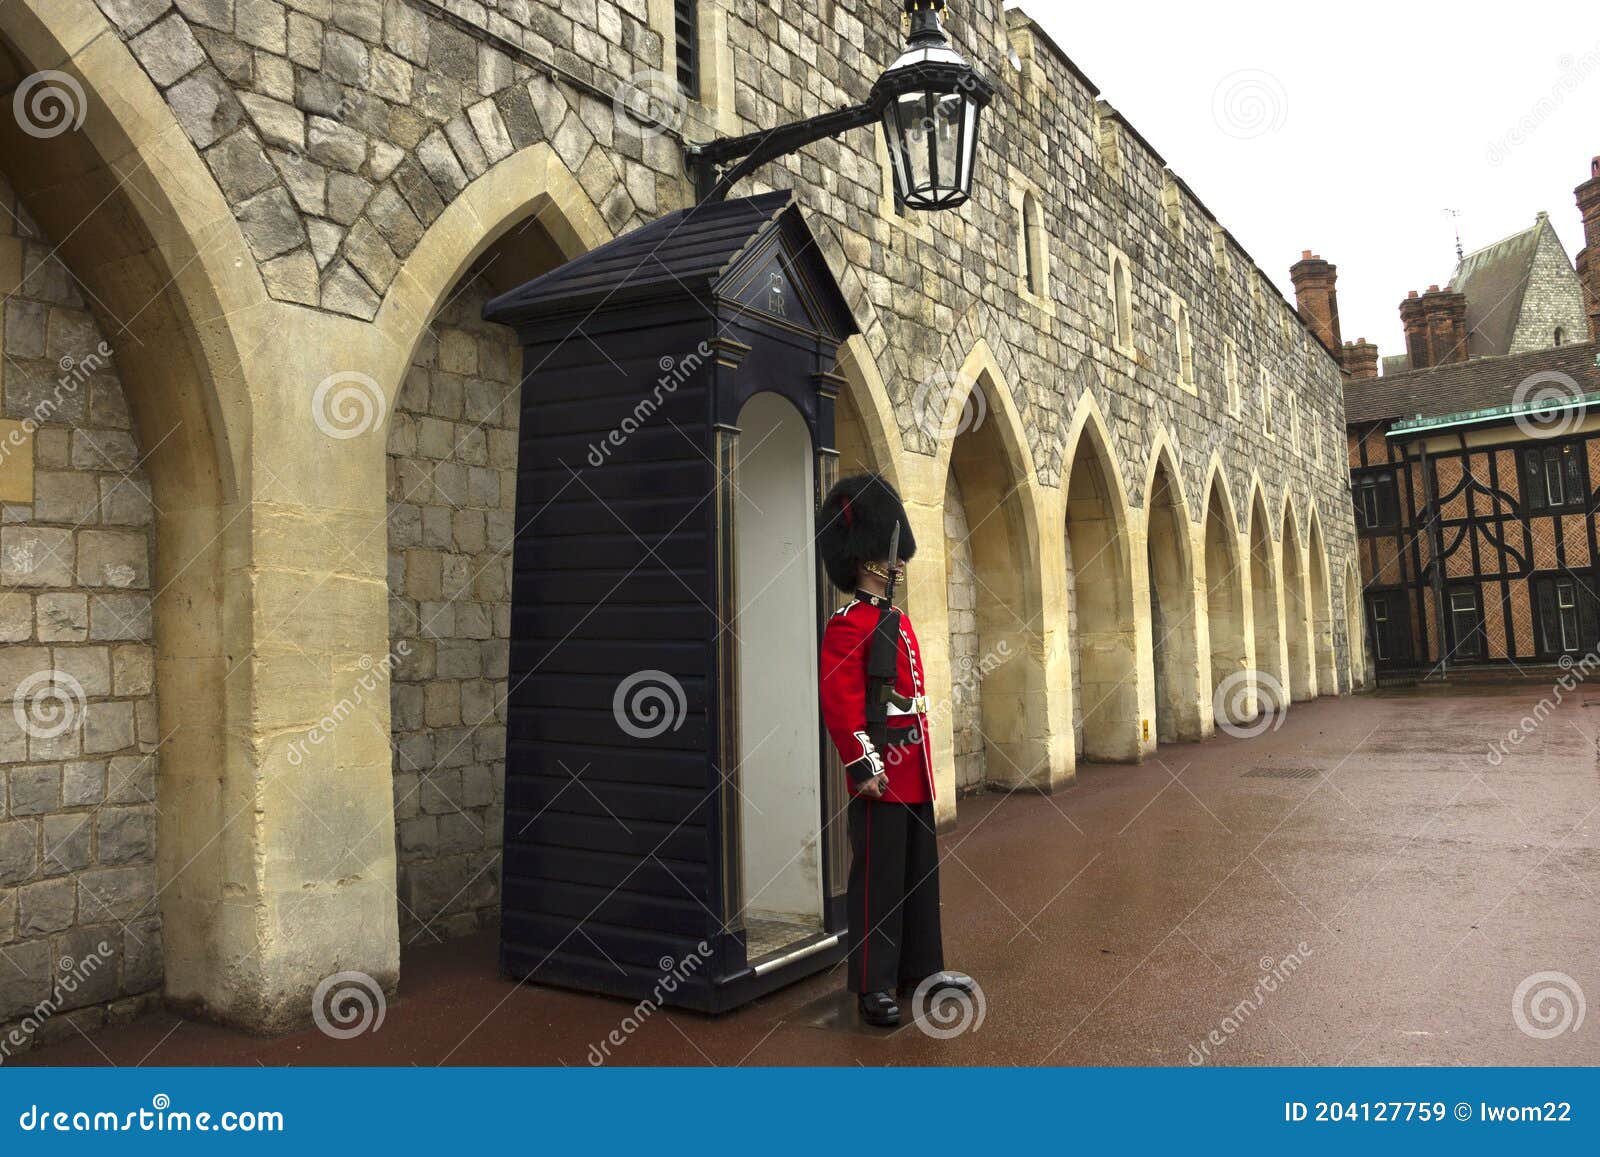 Guardia De Reinas Afuera De La Sala De Guardia En El Castillo De Windsor Uk  Imagen de archivo editorial - Imagen de ejército, palacio: 204127759